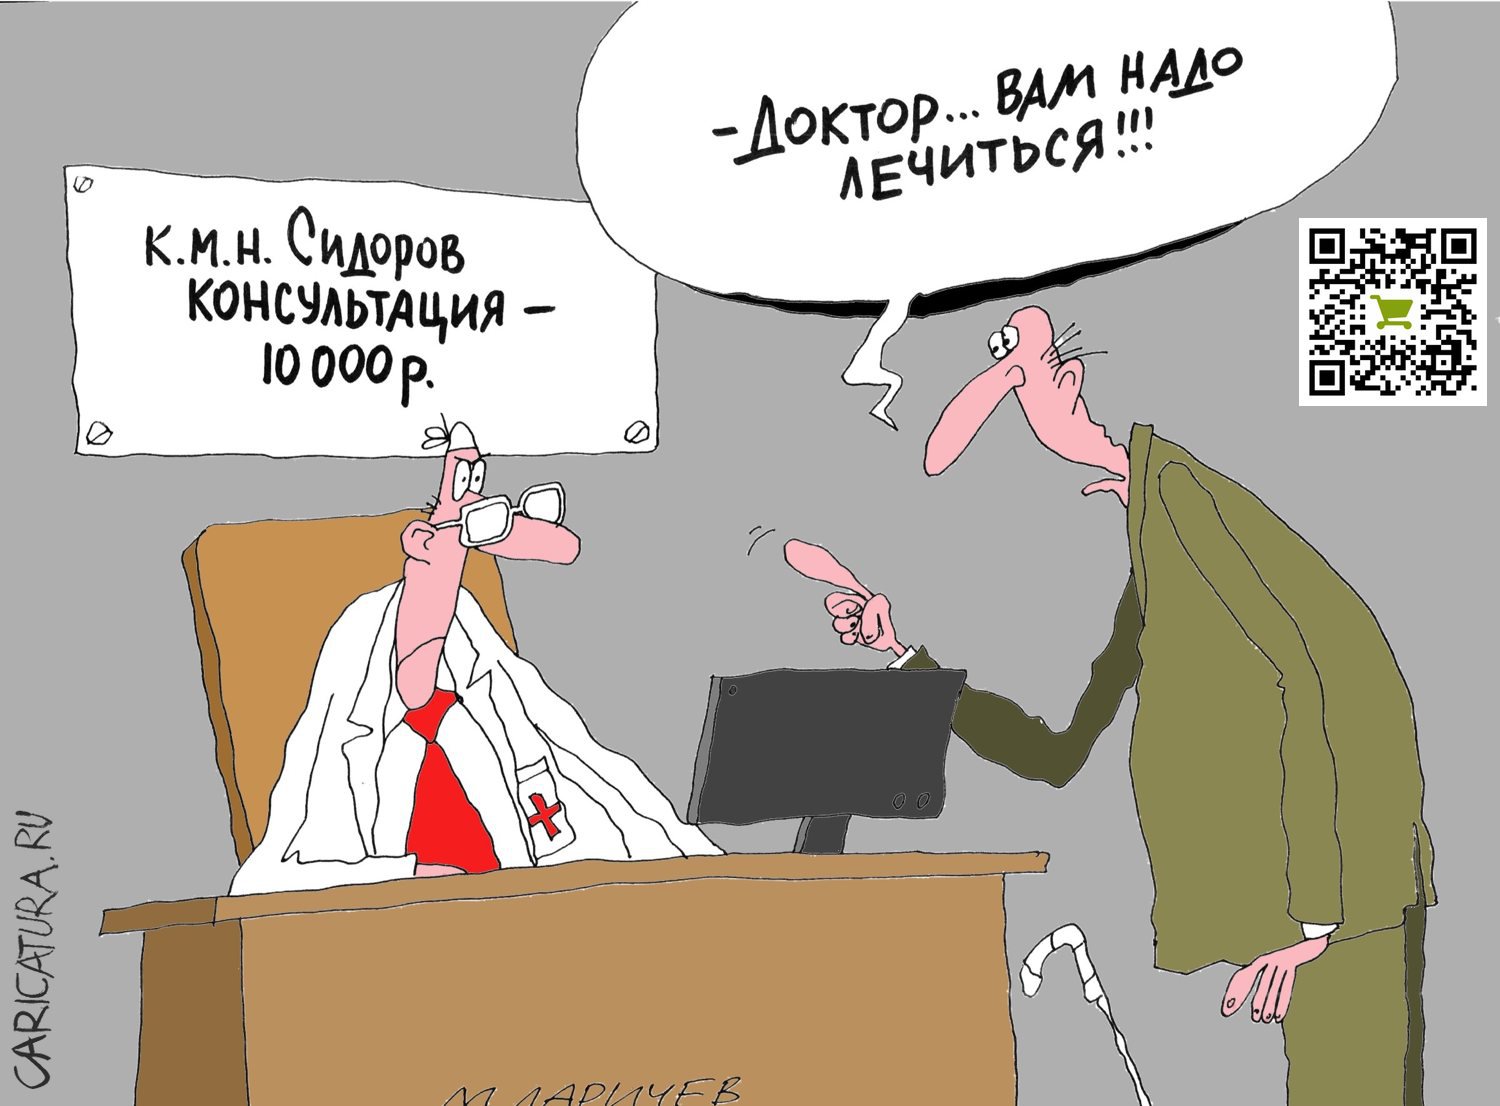 Карикатура "Консультация", Михаил Ларичев